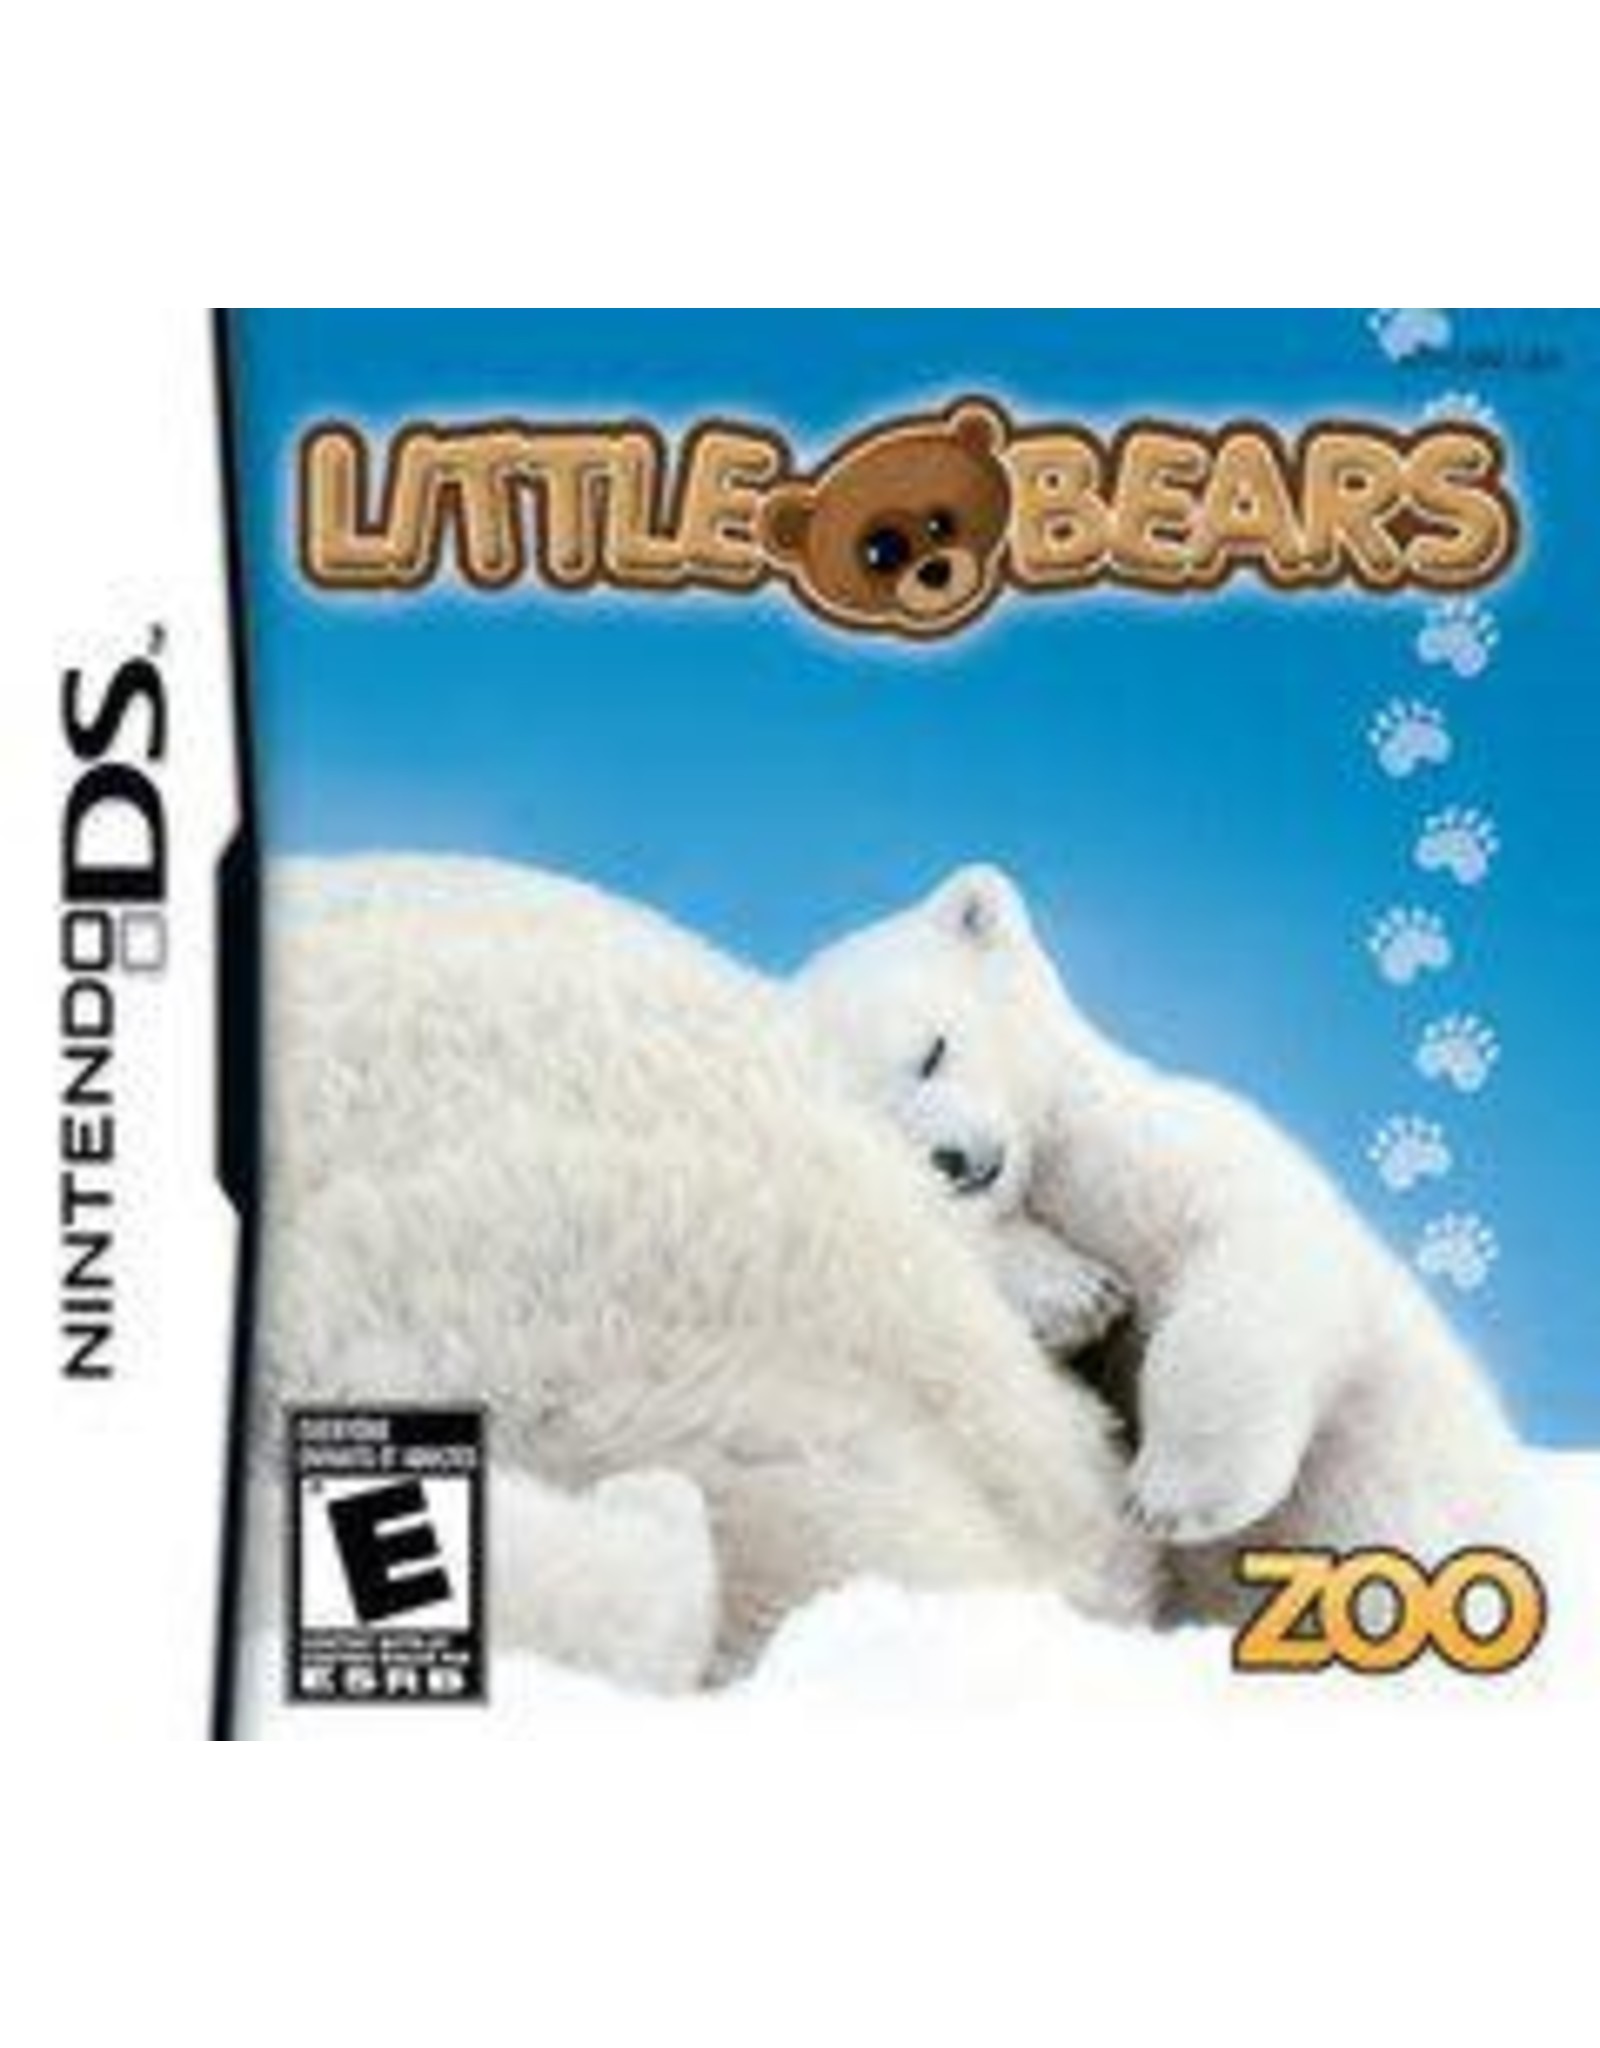 Nintendo DS Little Bears (Cart Only)